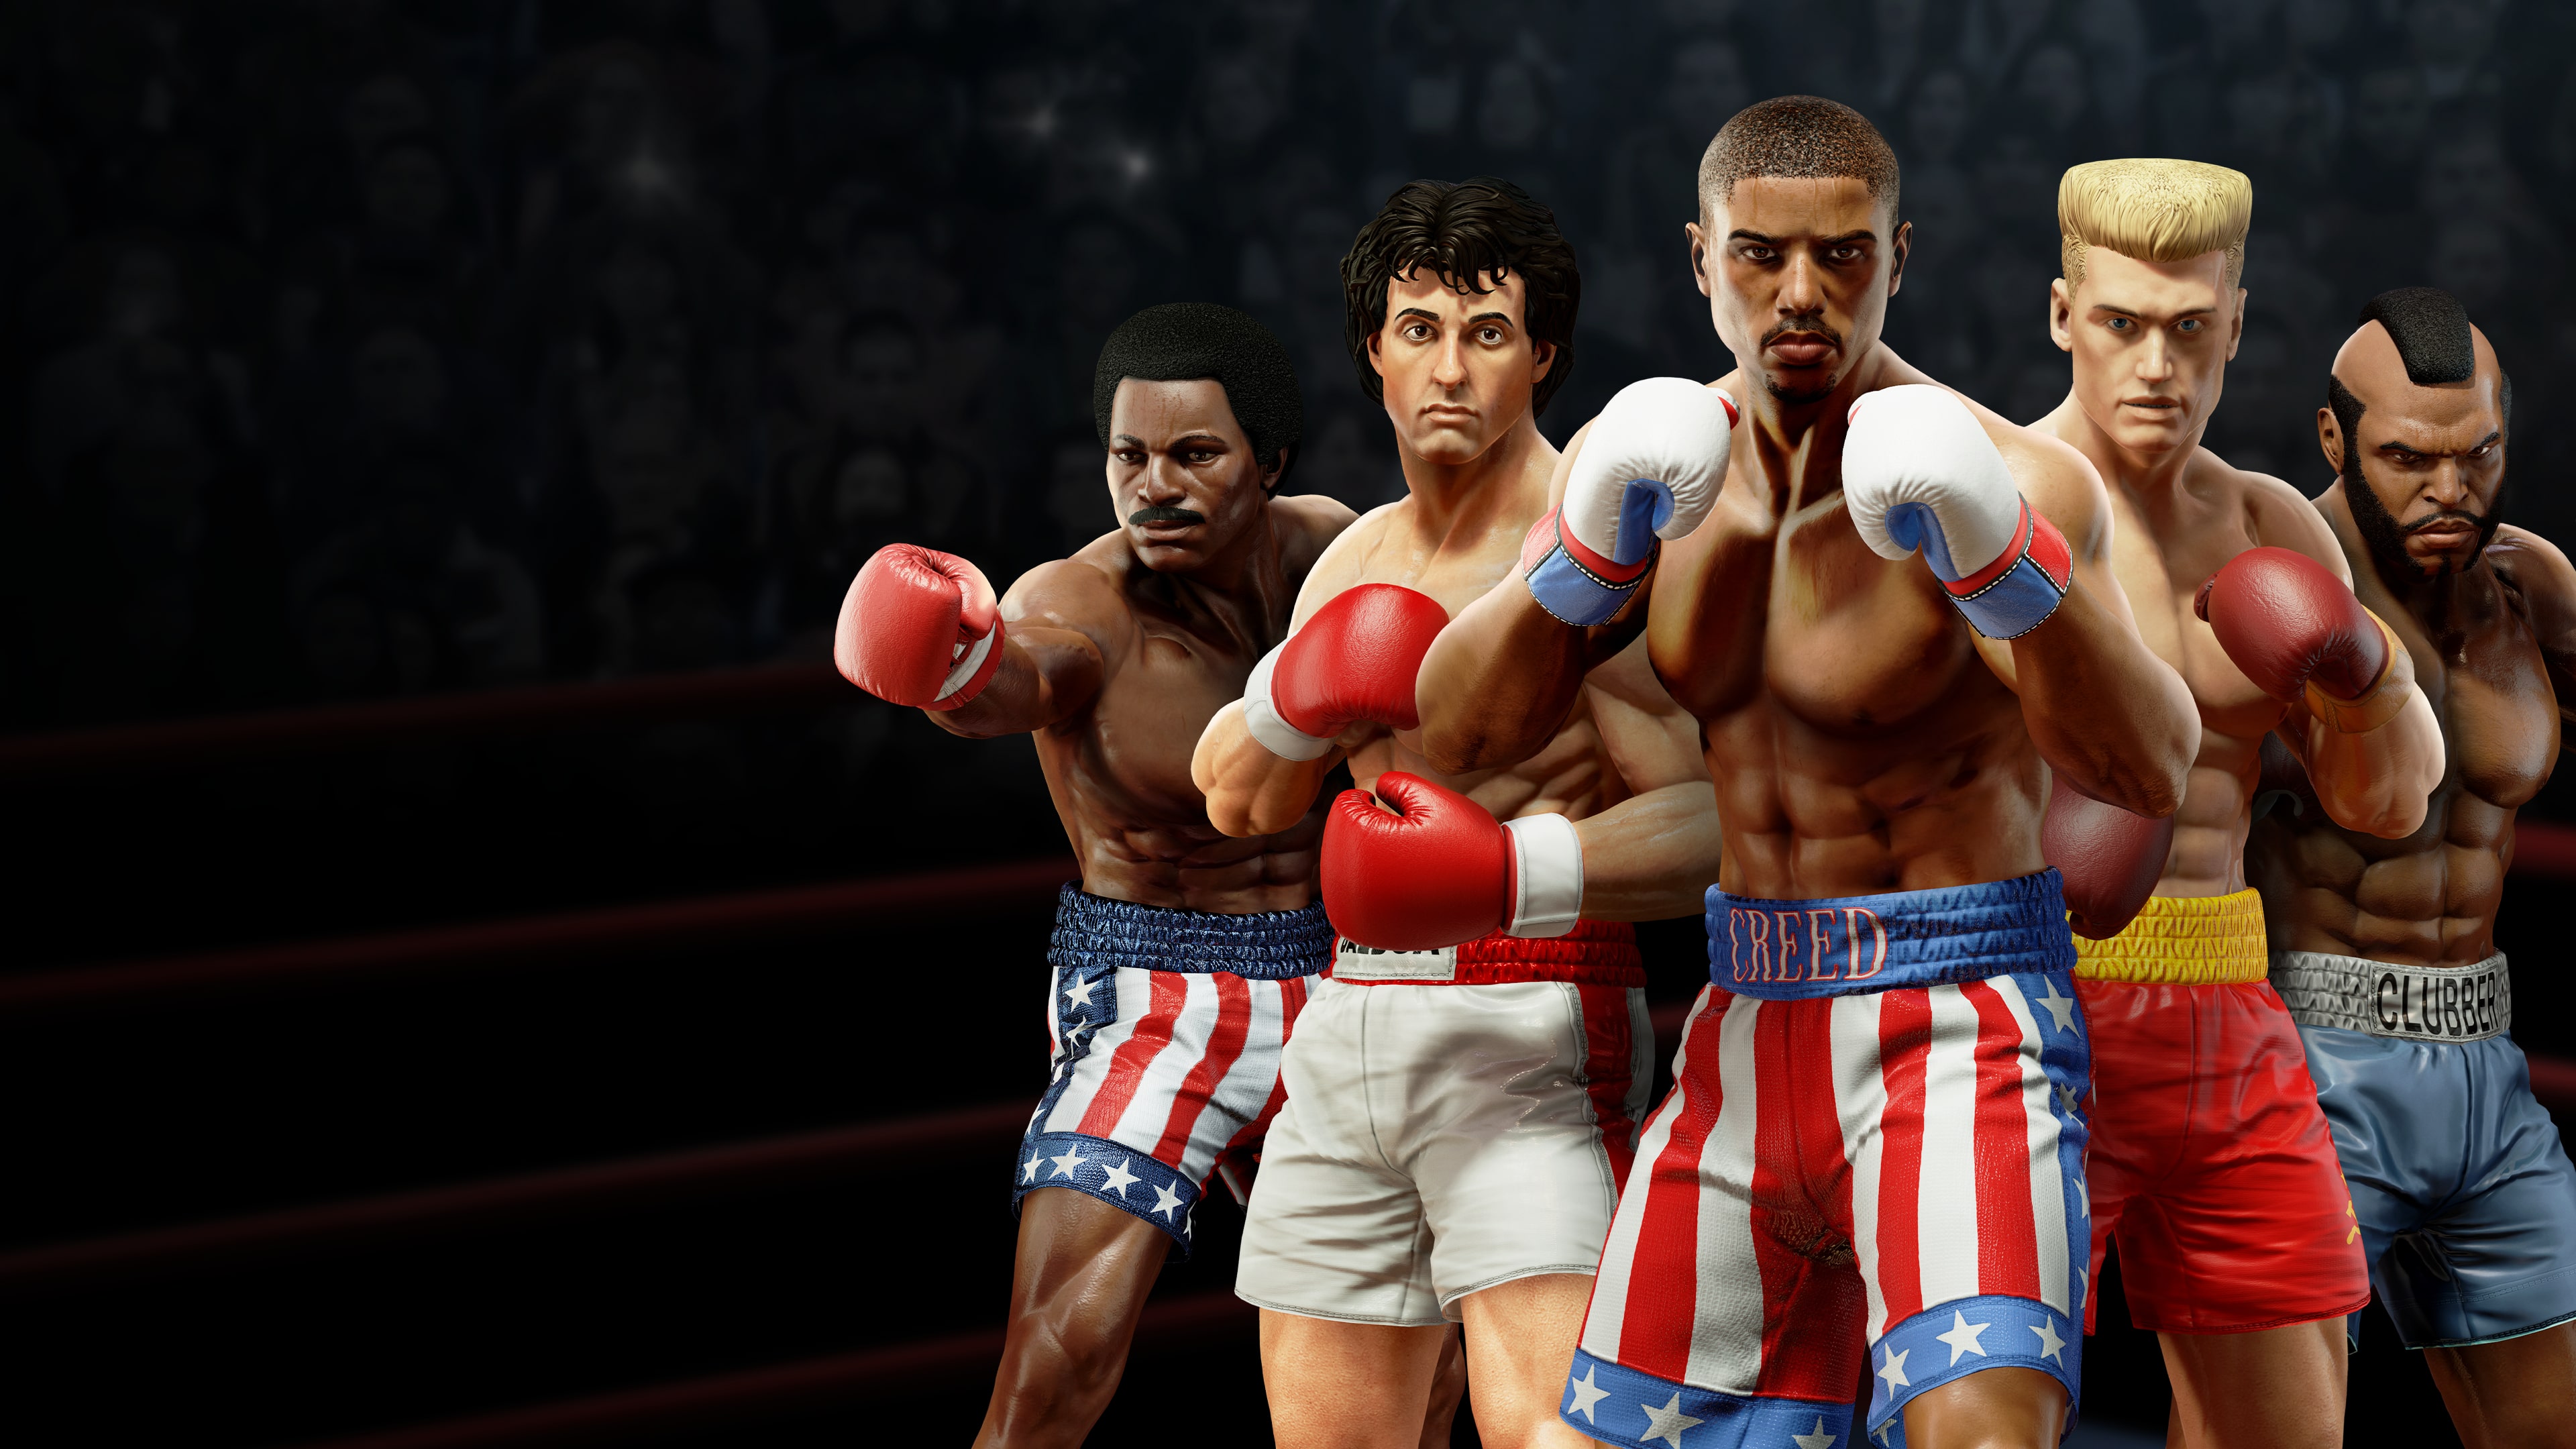 Нужна игра бокс. Big Rumble Boxing: Creed Champions. Big Rumble Boxing: Creed Champions ps4. Бокс игра 2023. Обои бокс.